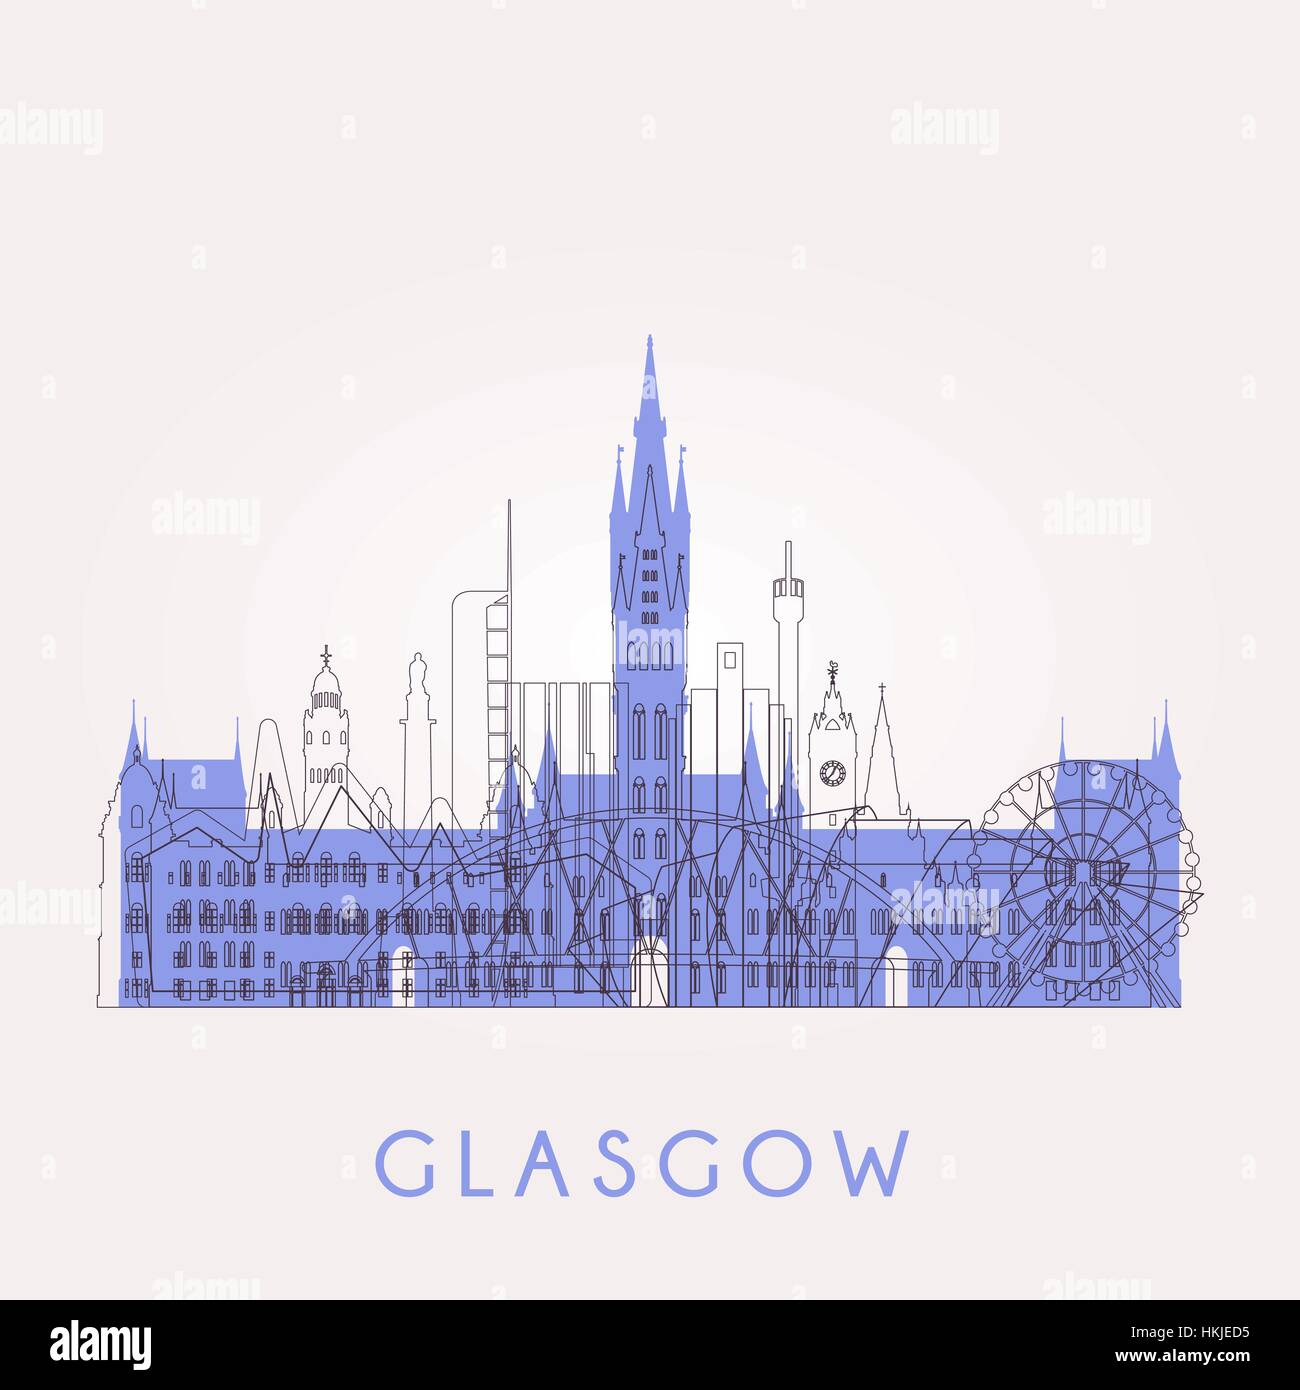 Profilo dello skyline di Glasgow con punti di riferimento. Illustrazione Vettoriale. Viaggi di affari e turismo concetto con edifici storici. Immagine per presentazione, bann Illustrazione Vettoriale